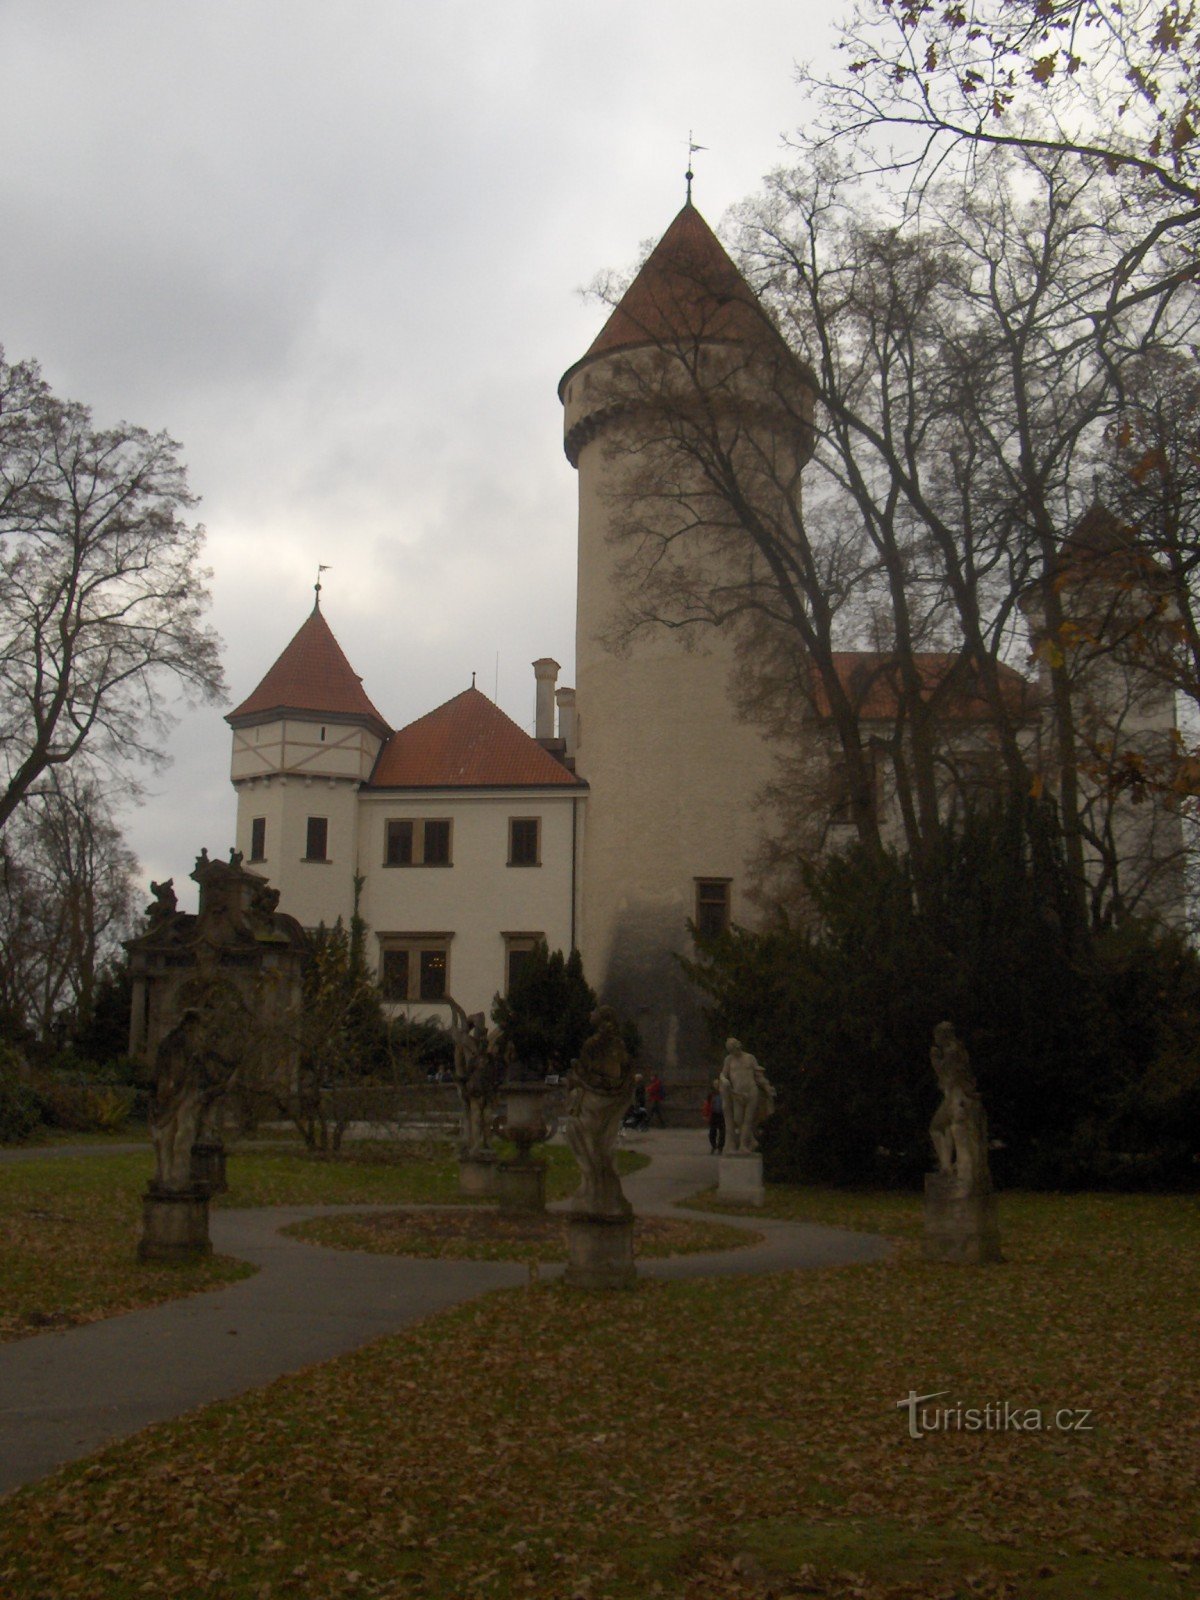 Gevallen bladeren rond het kasteel van Konopiště.